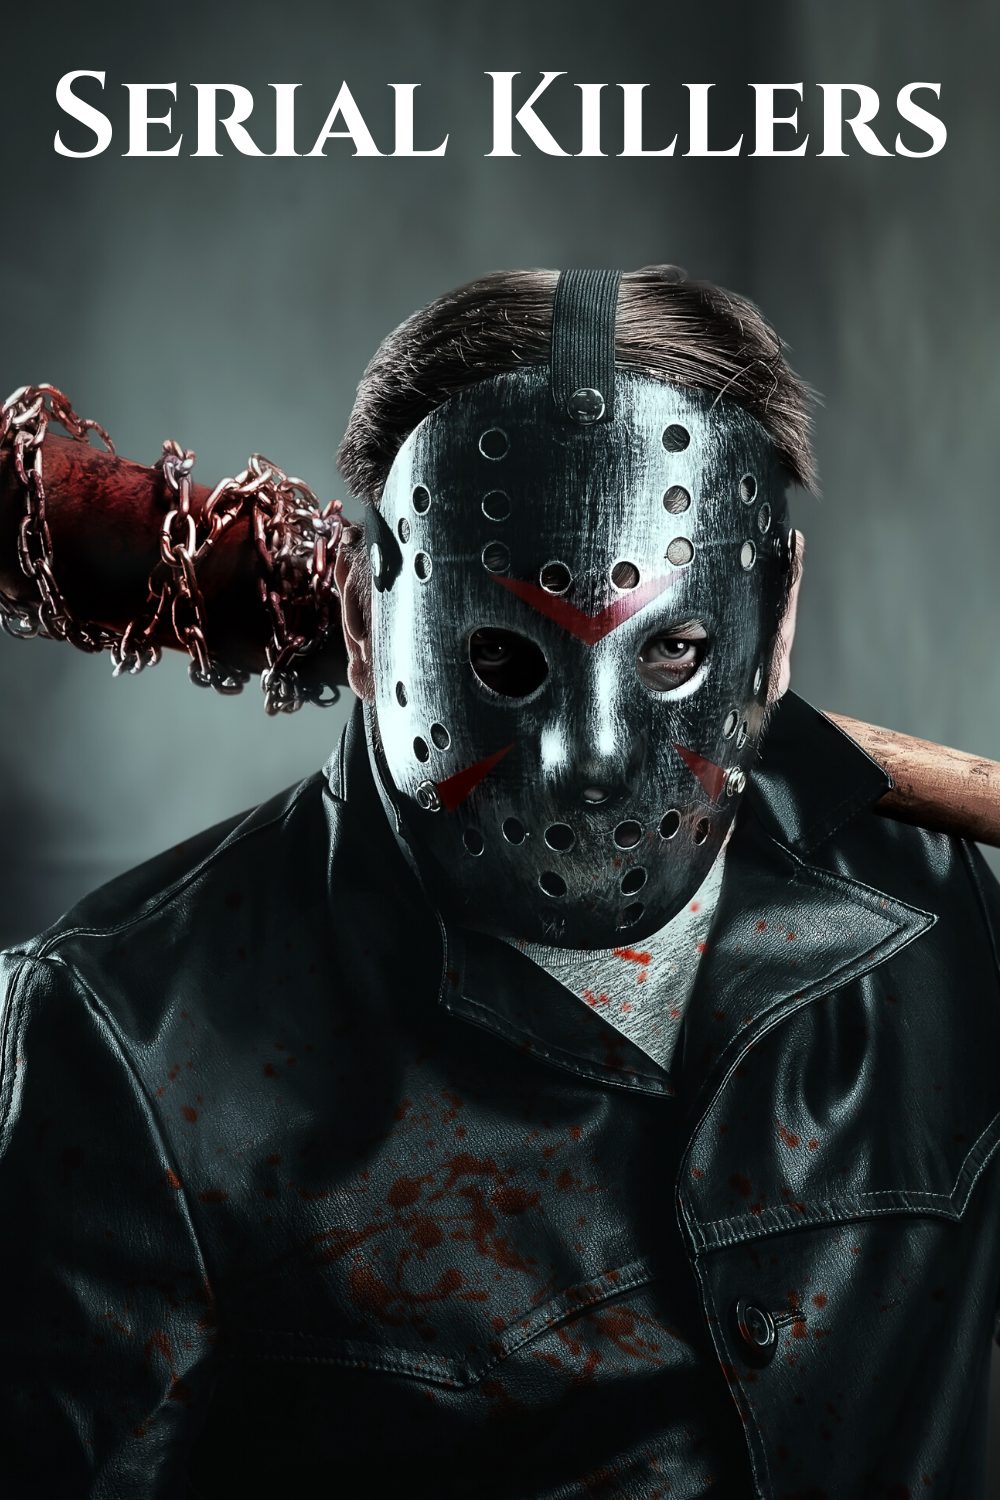 evil man with Jason hockey mask, black jacket